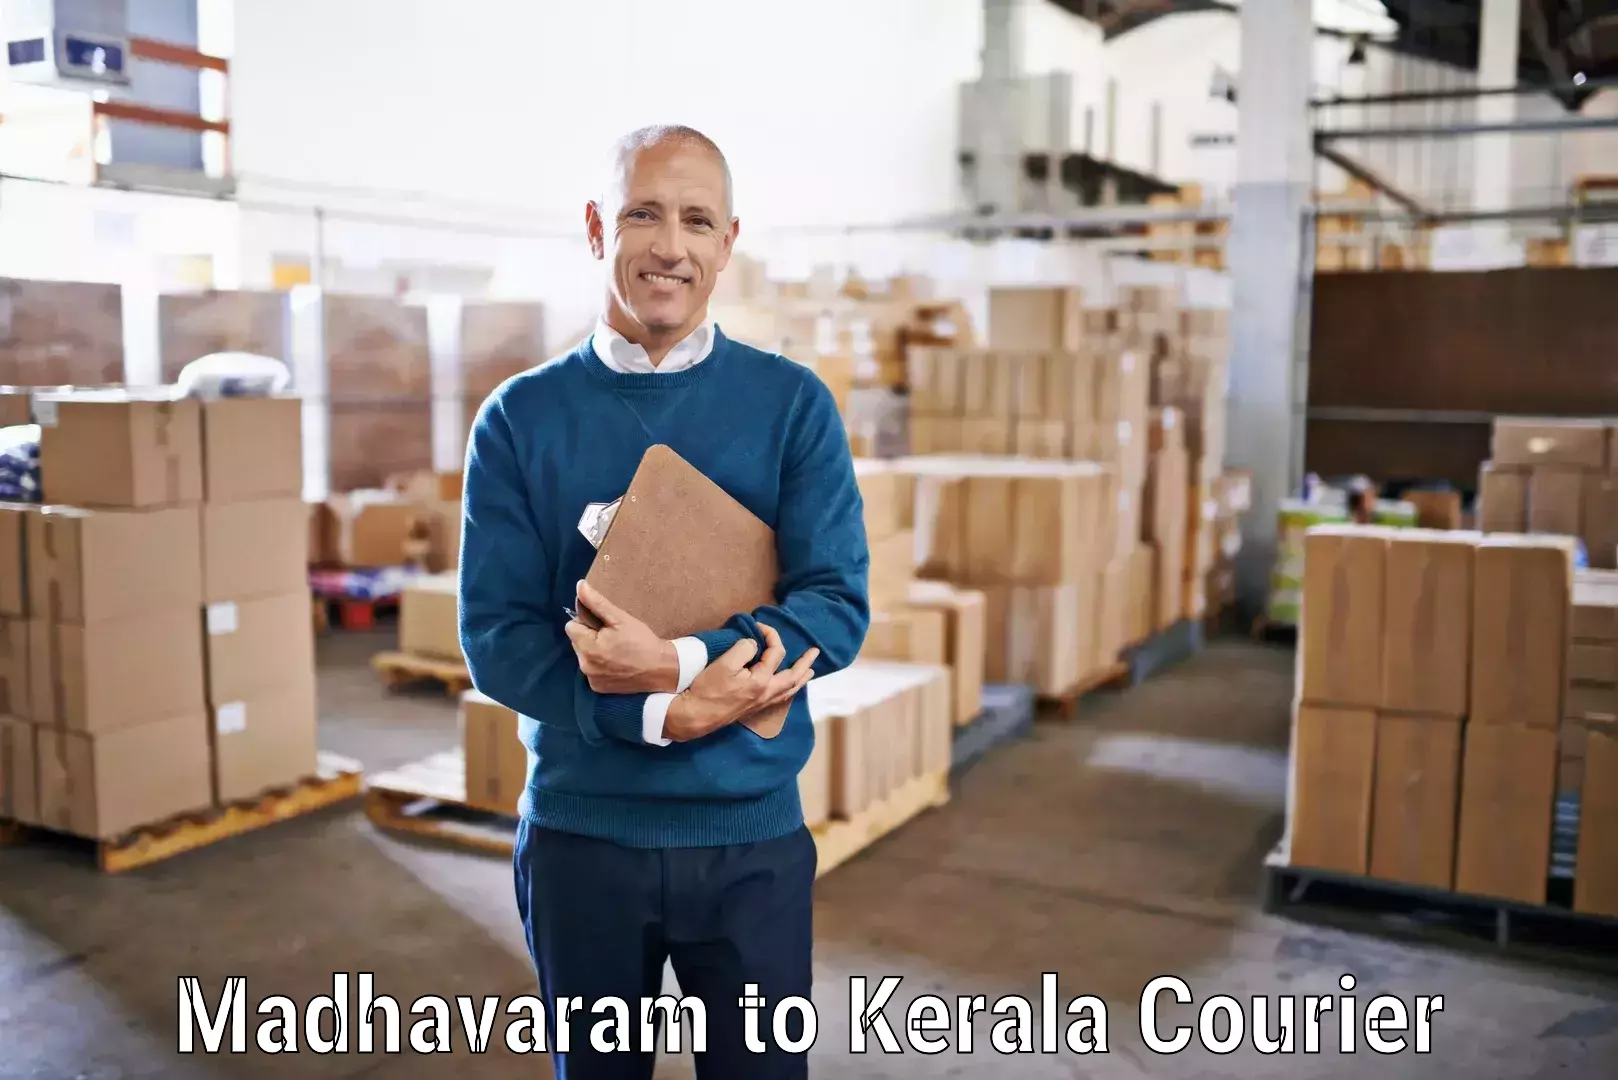 Comprehensive shipping network Madhavaram to Nedumkandam